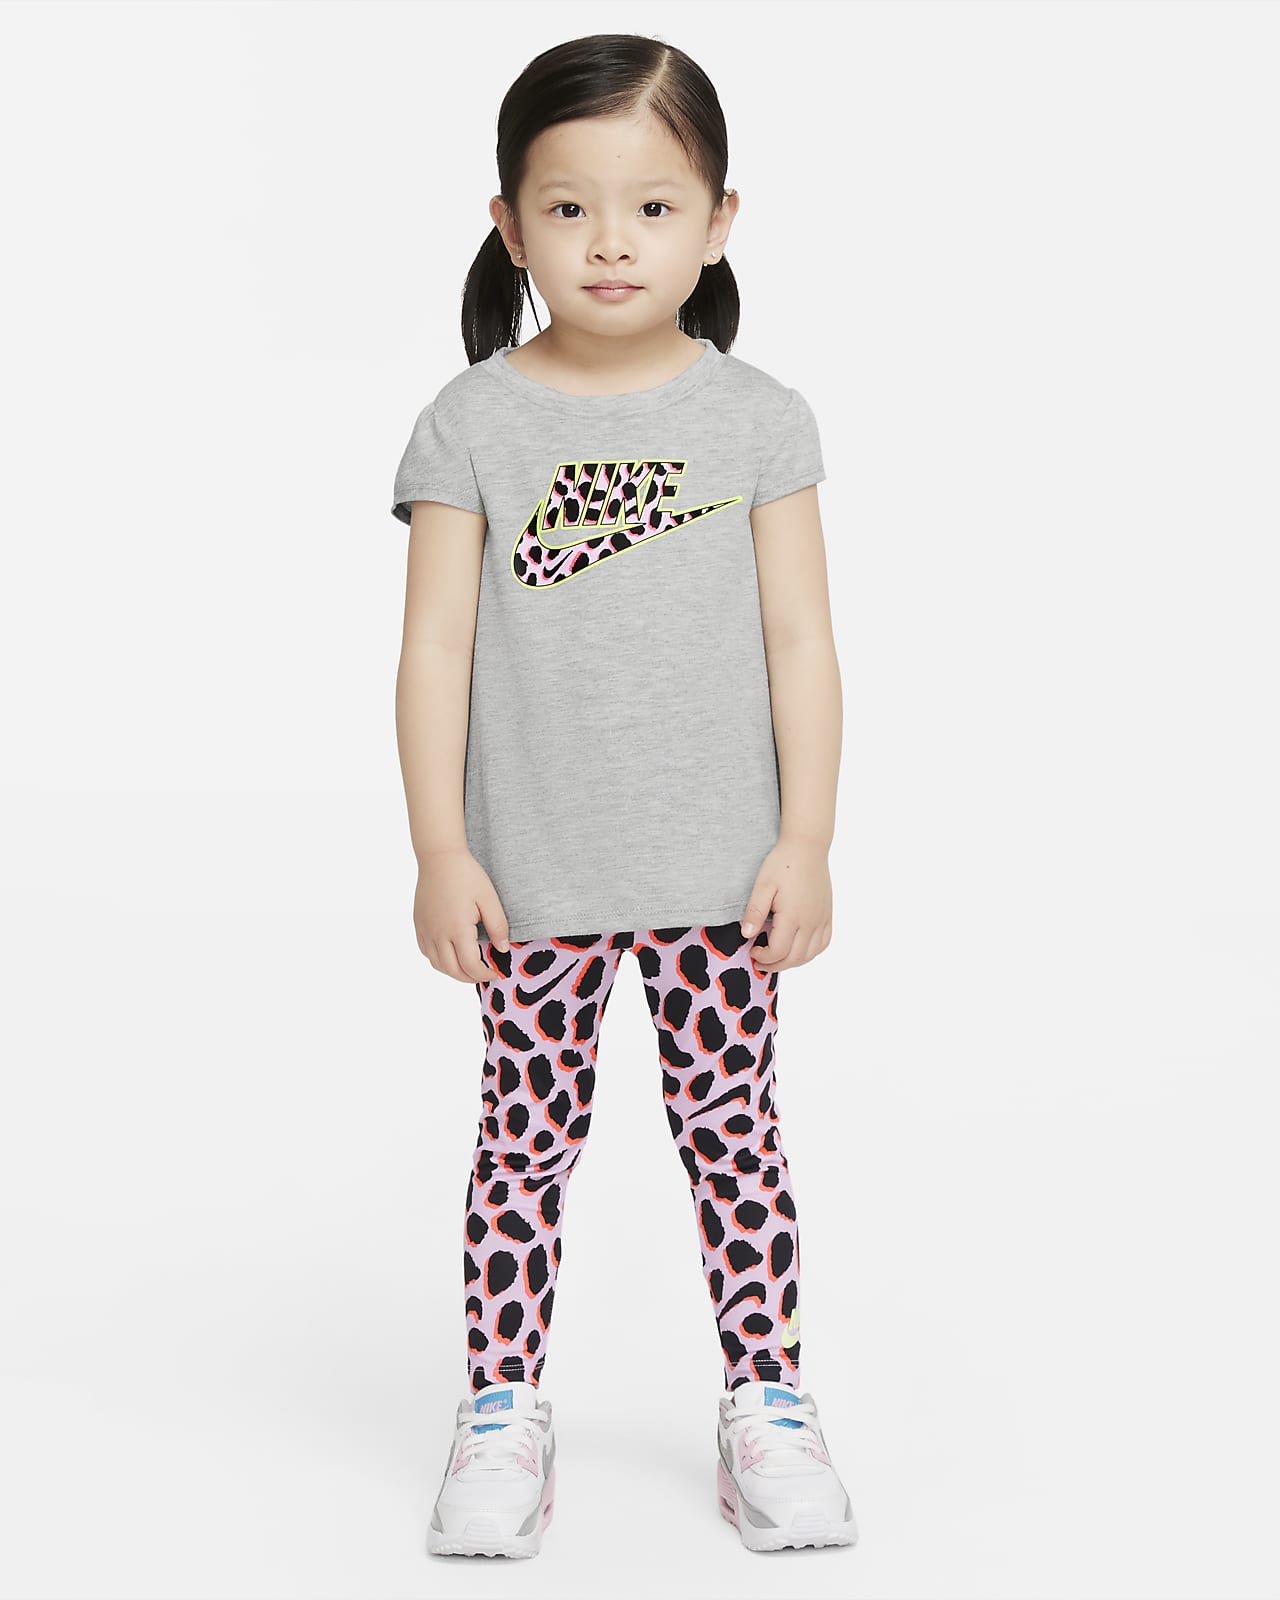 Nike Toddler T-Shirt and Leggings Set